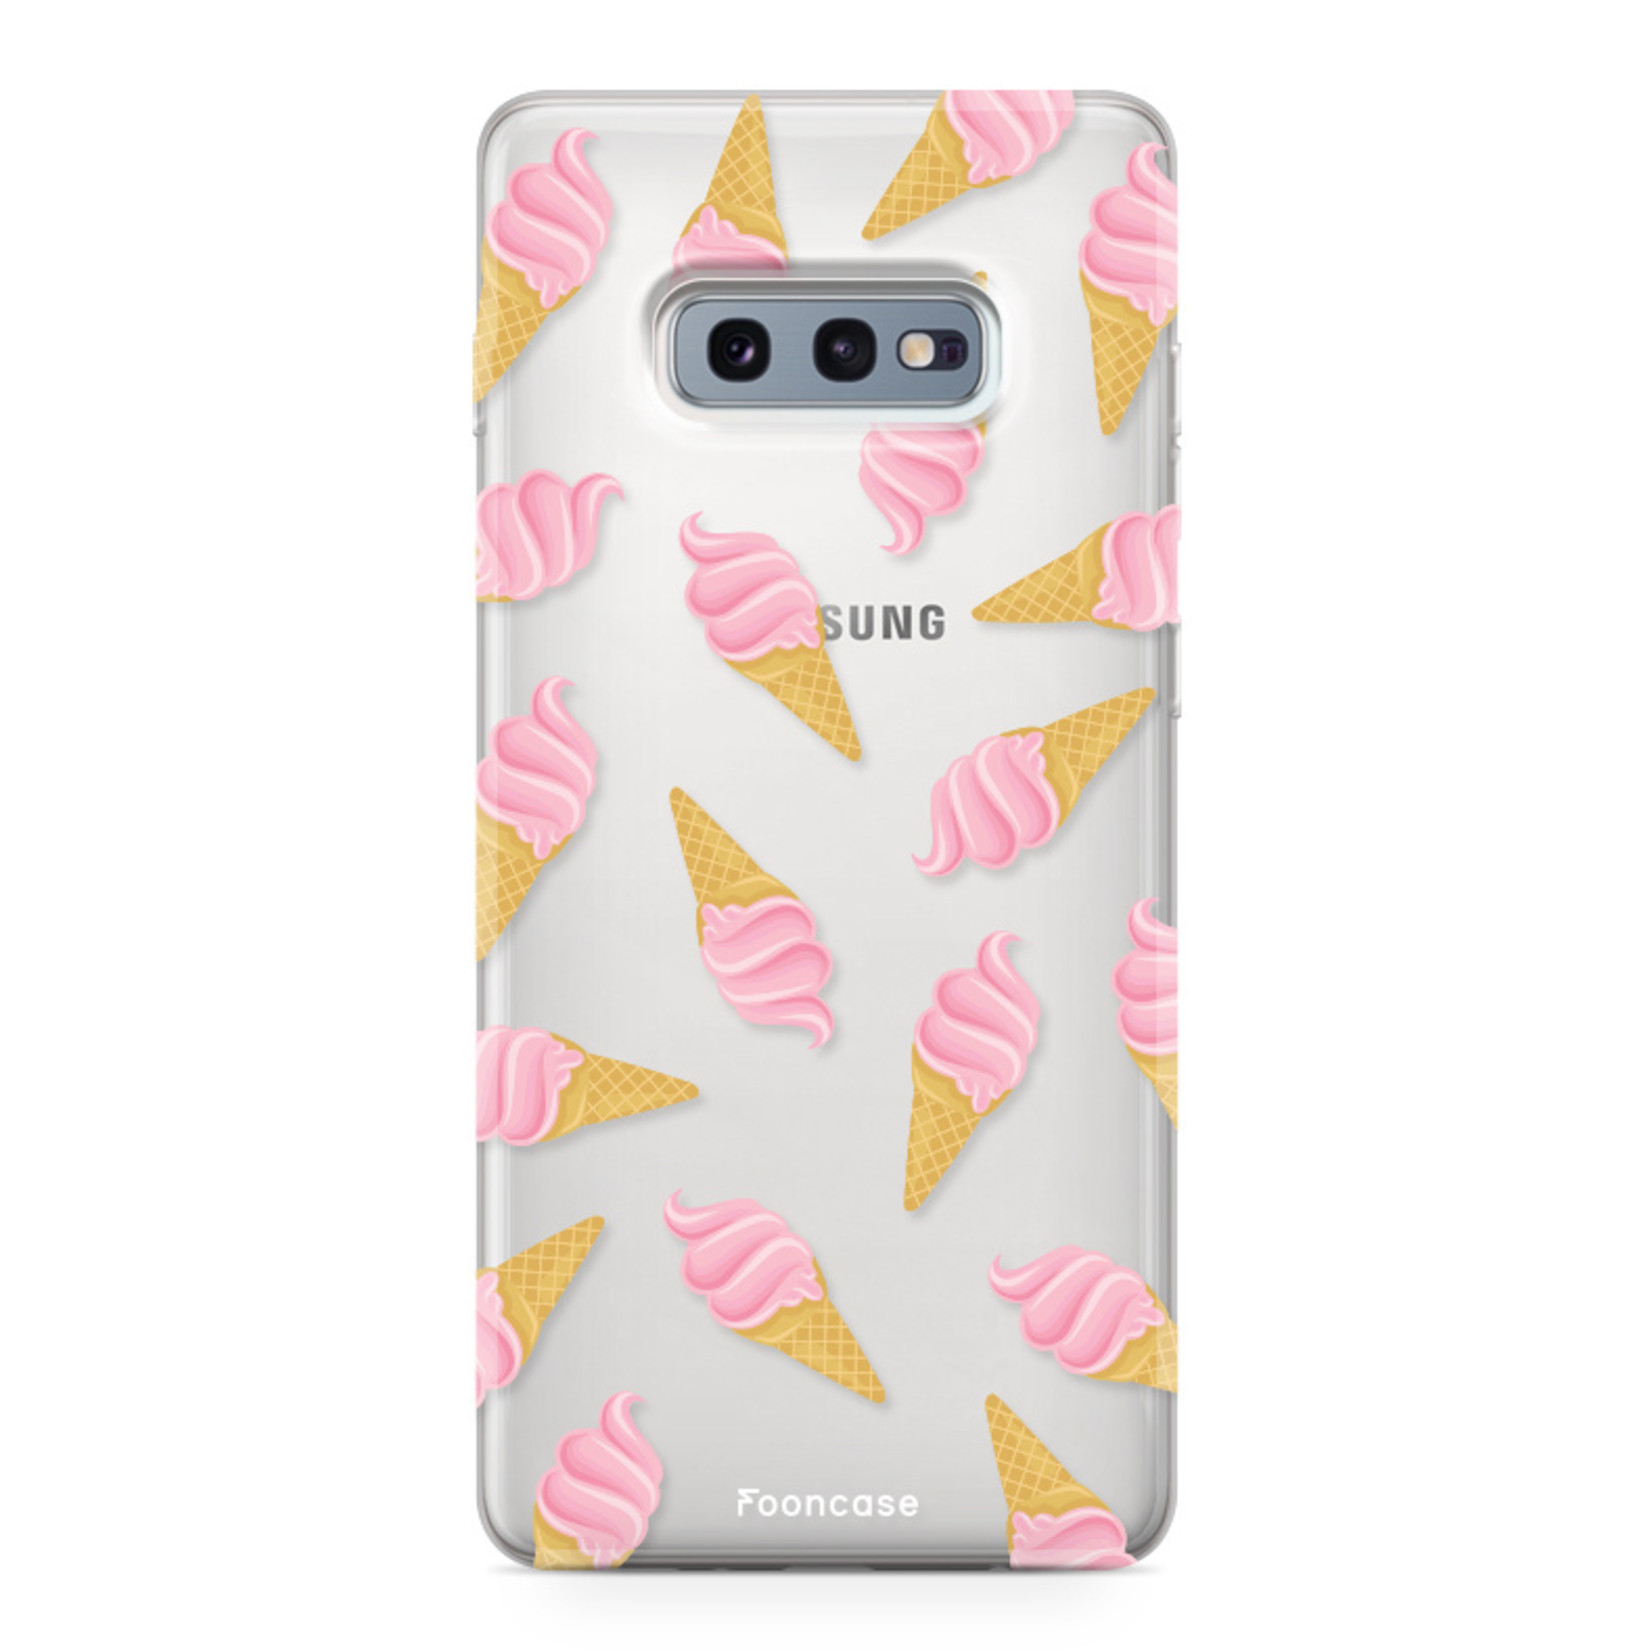 FOONCASE Samsung Galaxy S10e Case - Ice Ice Baby